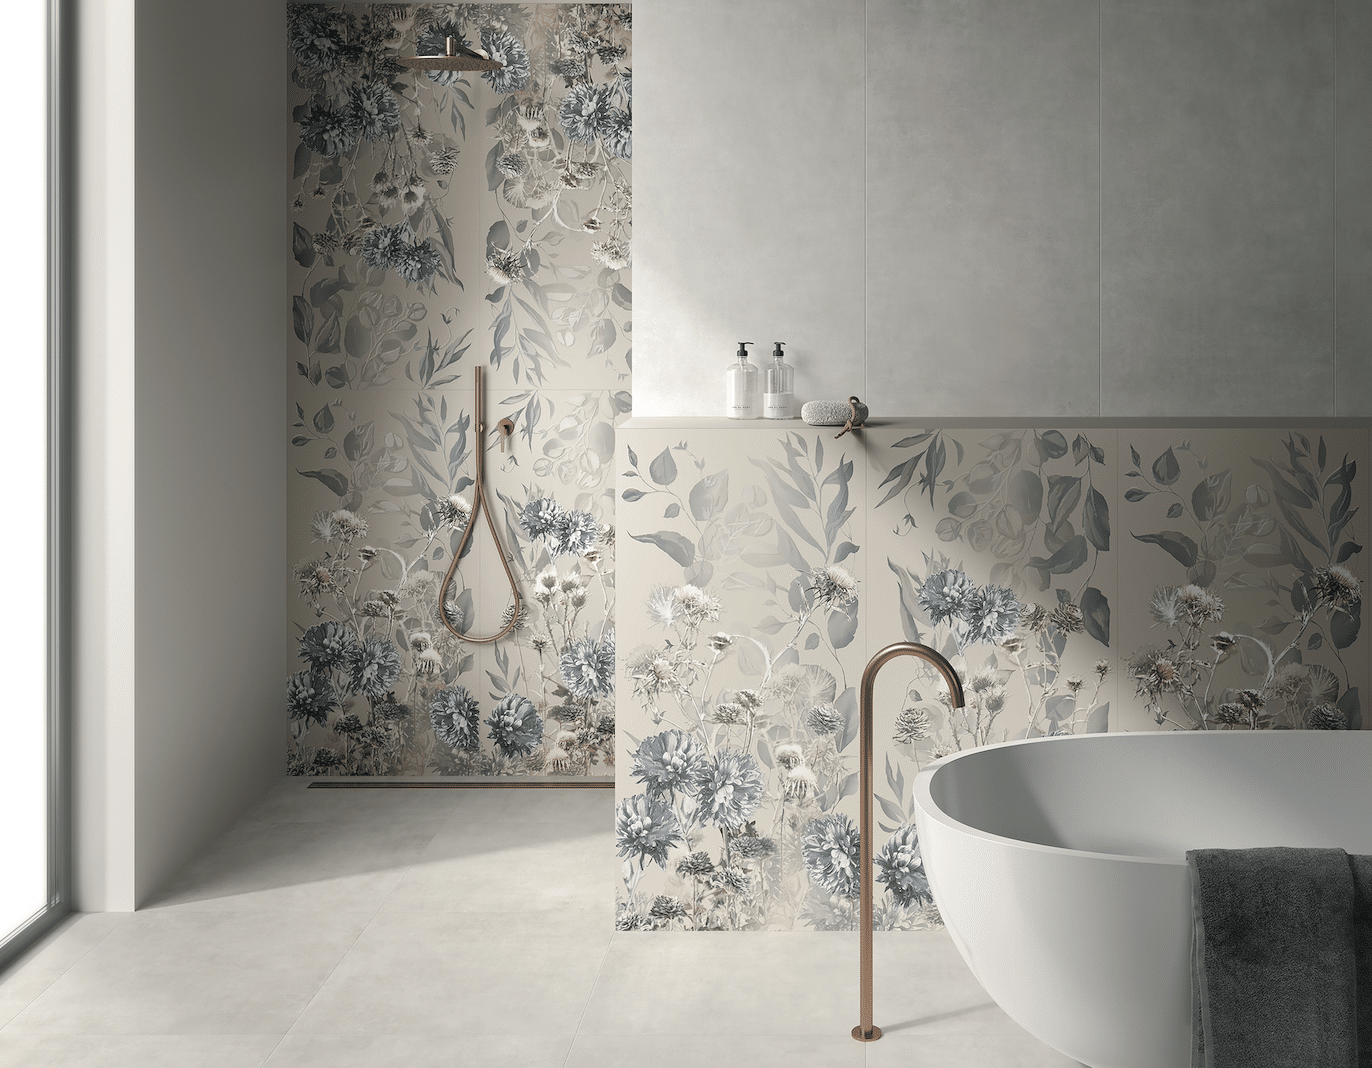 Fliesendorf zeigt ein Badezimmer mit hellem Fliesenboden und Wandfliesen mit floralem Muster in der offenen Dusche und hinter der freistehenden Badewanne mit goldenen Armaturen.